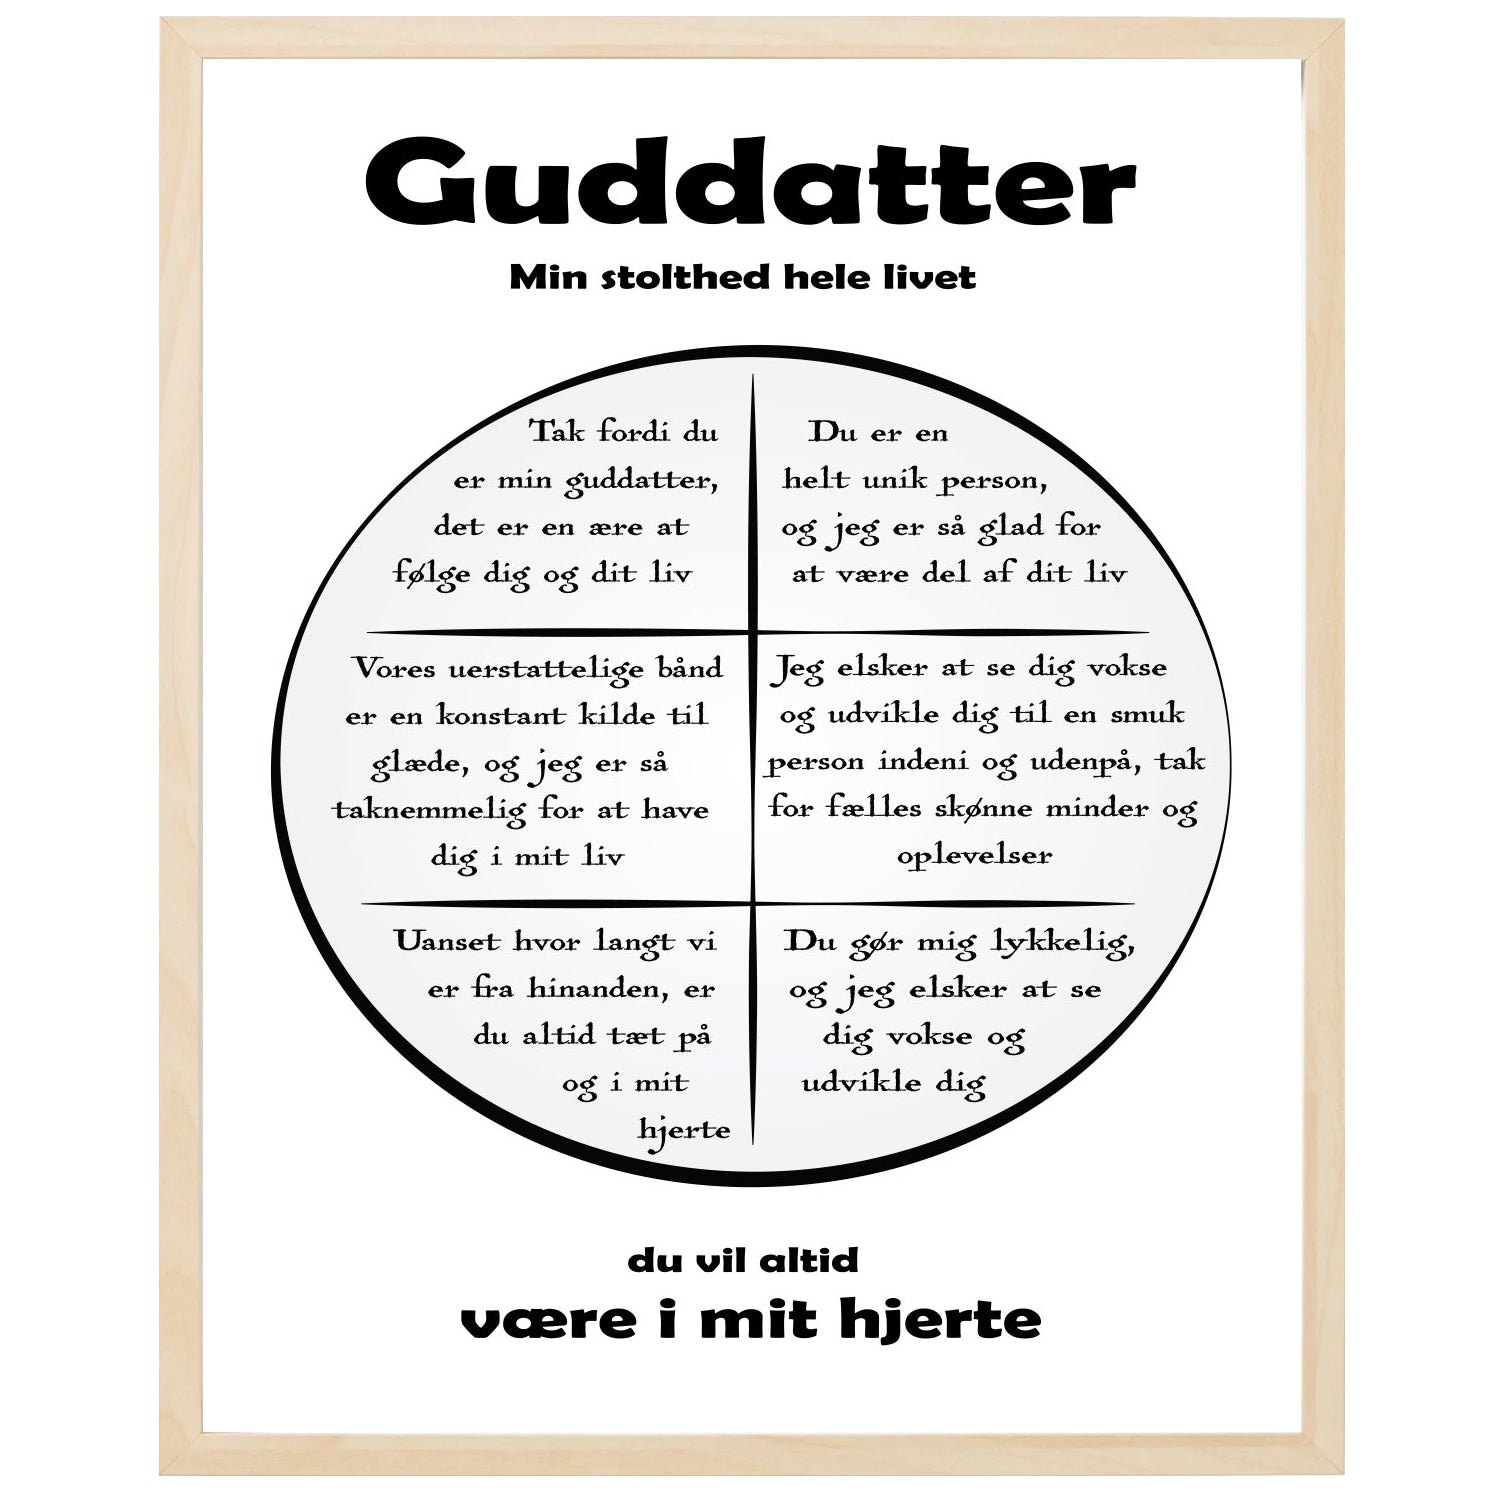 En plakat med overskriften Guddatter, en rustik cirkel og indeni cirklen mange positive sætninger som beskriver en Guddatter